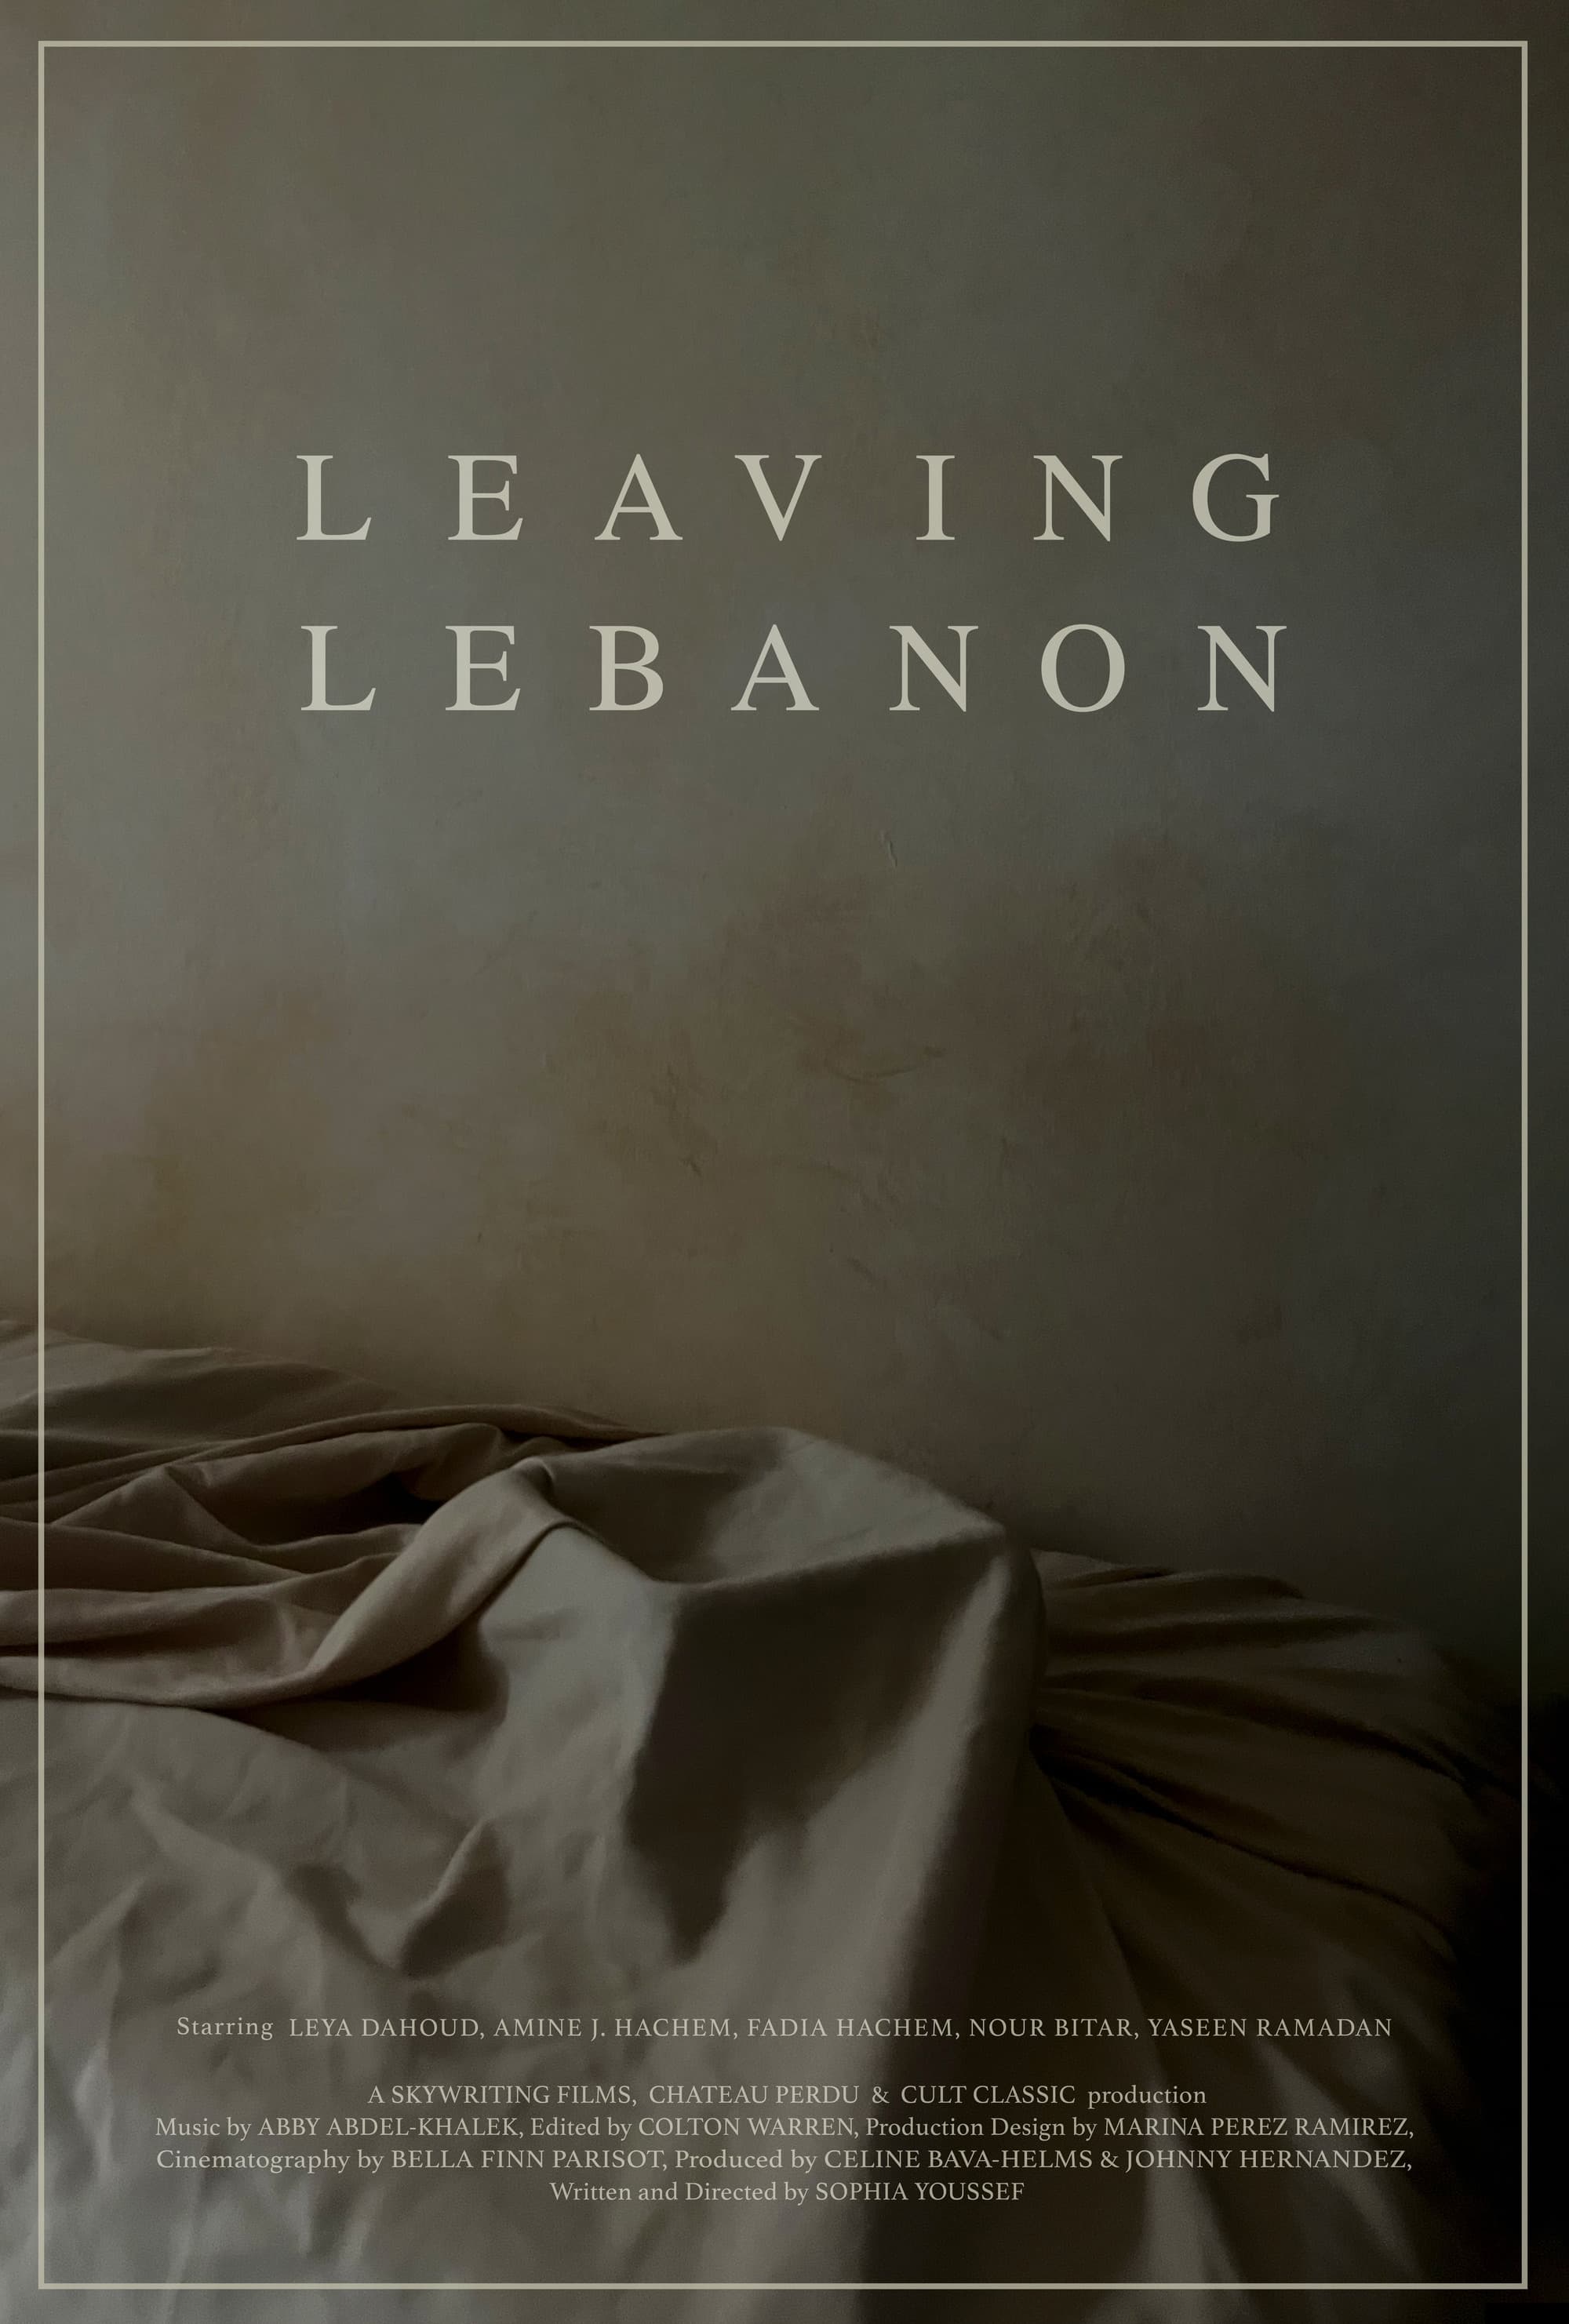 LEAVING LEBANON